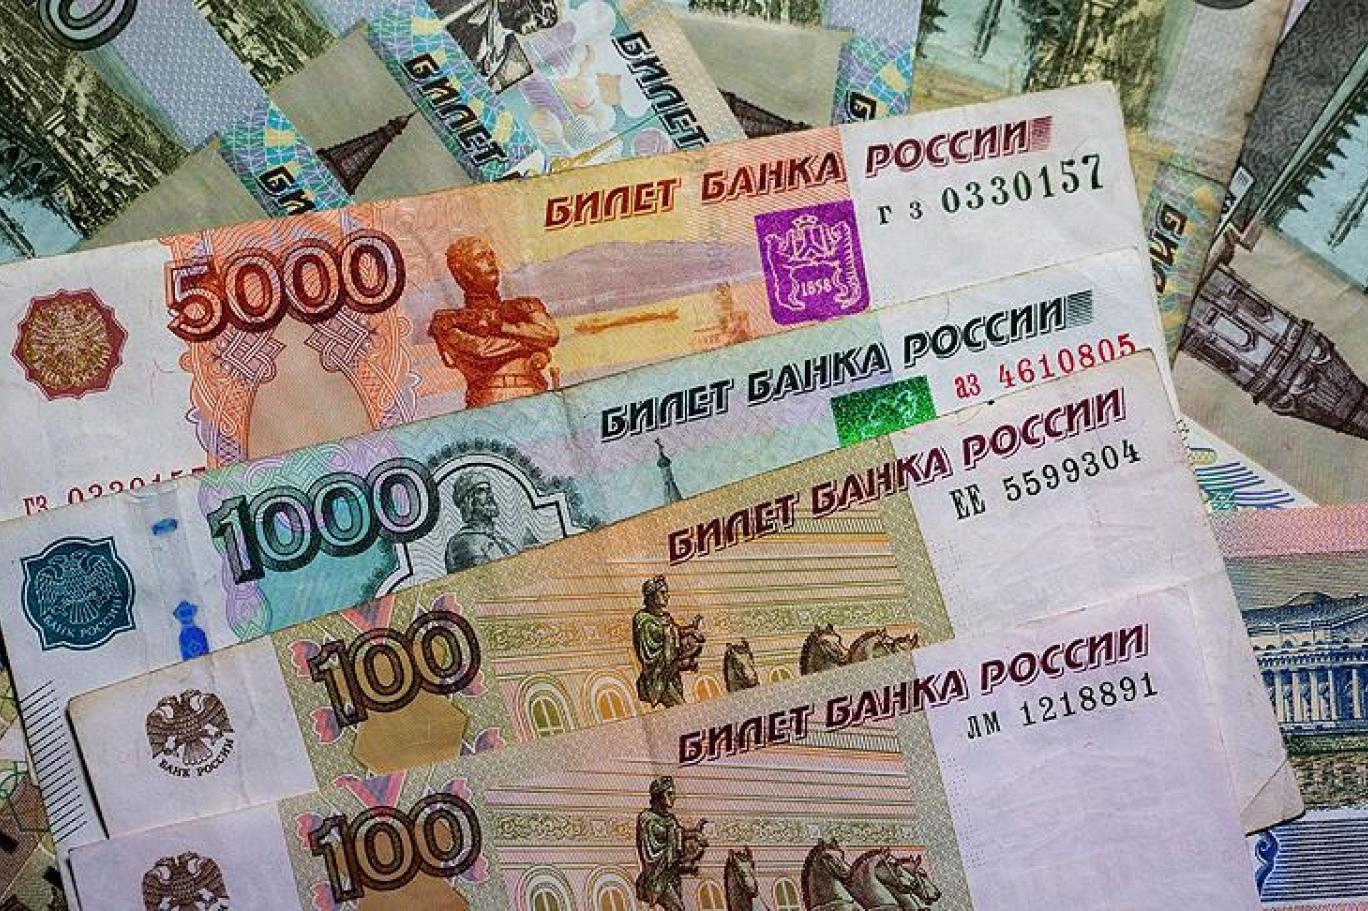 Forbes'a göre Rusya'nın en güvenilir 100 bankası